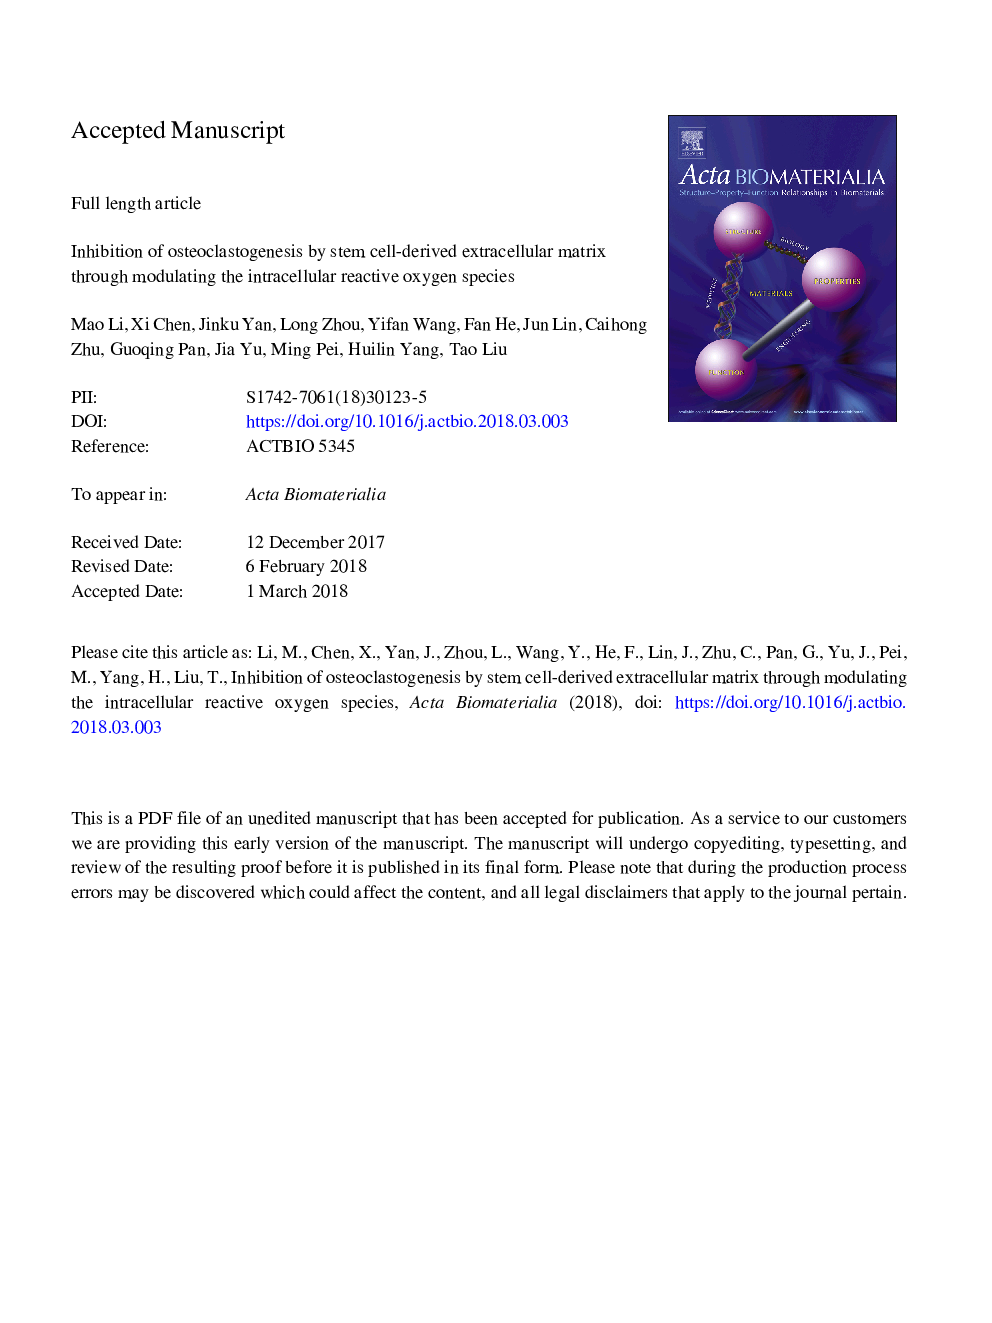 مهار استئوکلستوژنز توسط ماتریکس خارج سلولی حاصل از سلول های بنیادی از طریق مدولاسیون گونه های اکسیژن واکنش پذیر داخل سلولی 